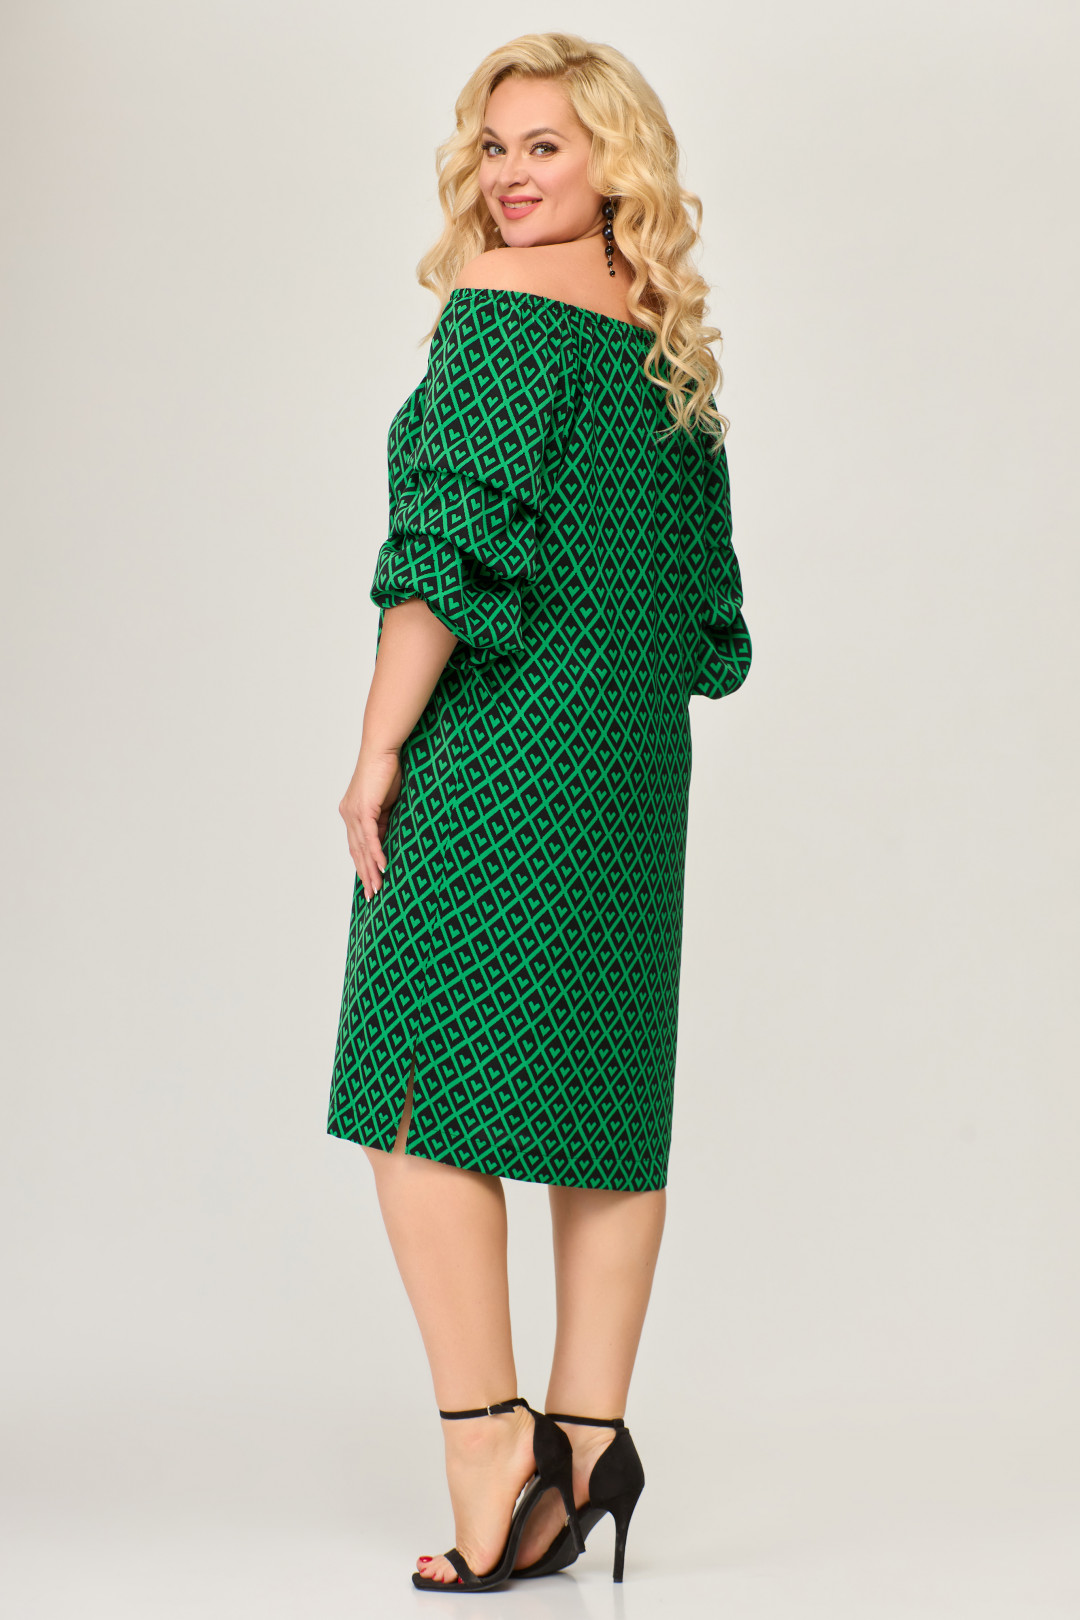 Платье Светлана-Стиль 1673 зеленый+черный